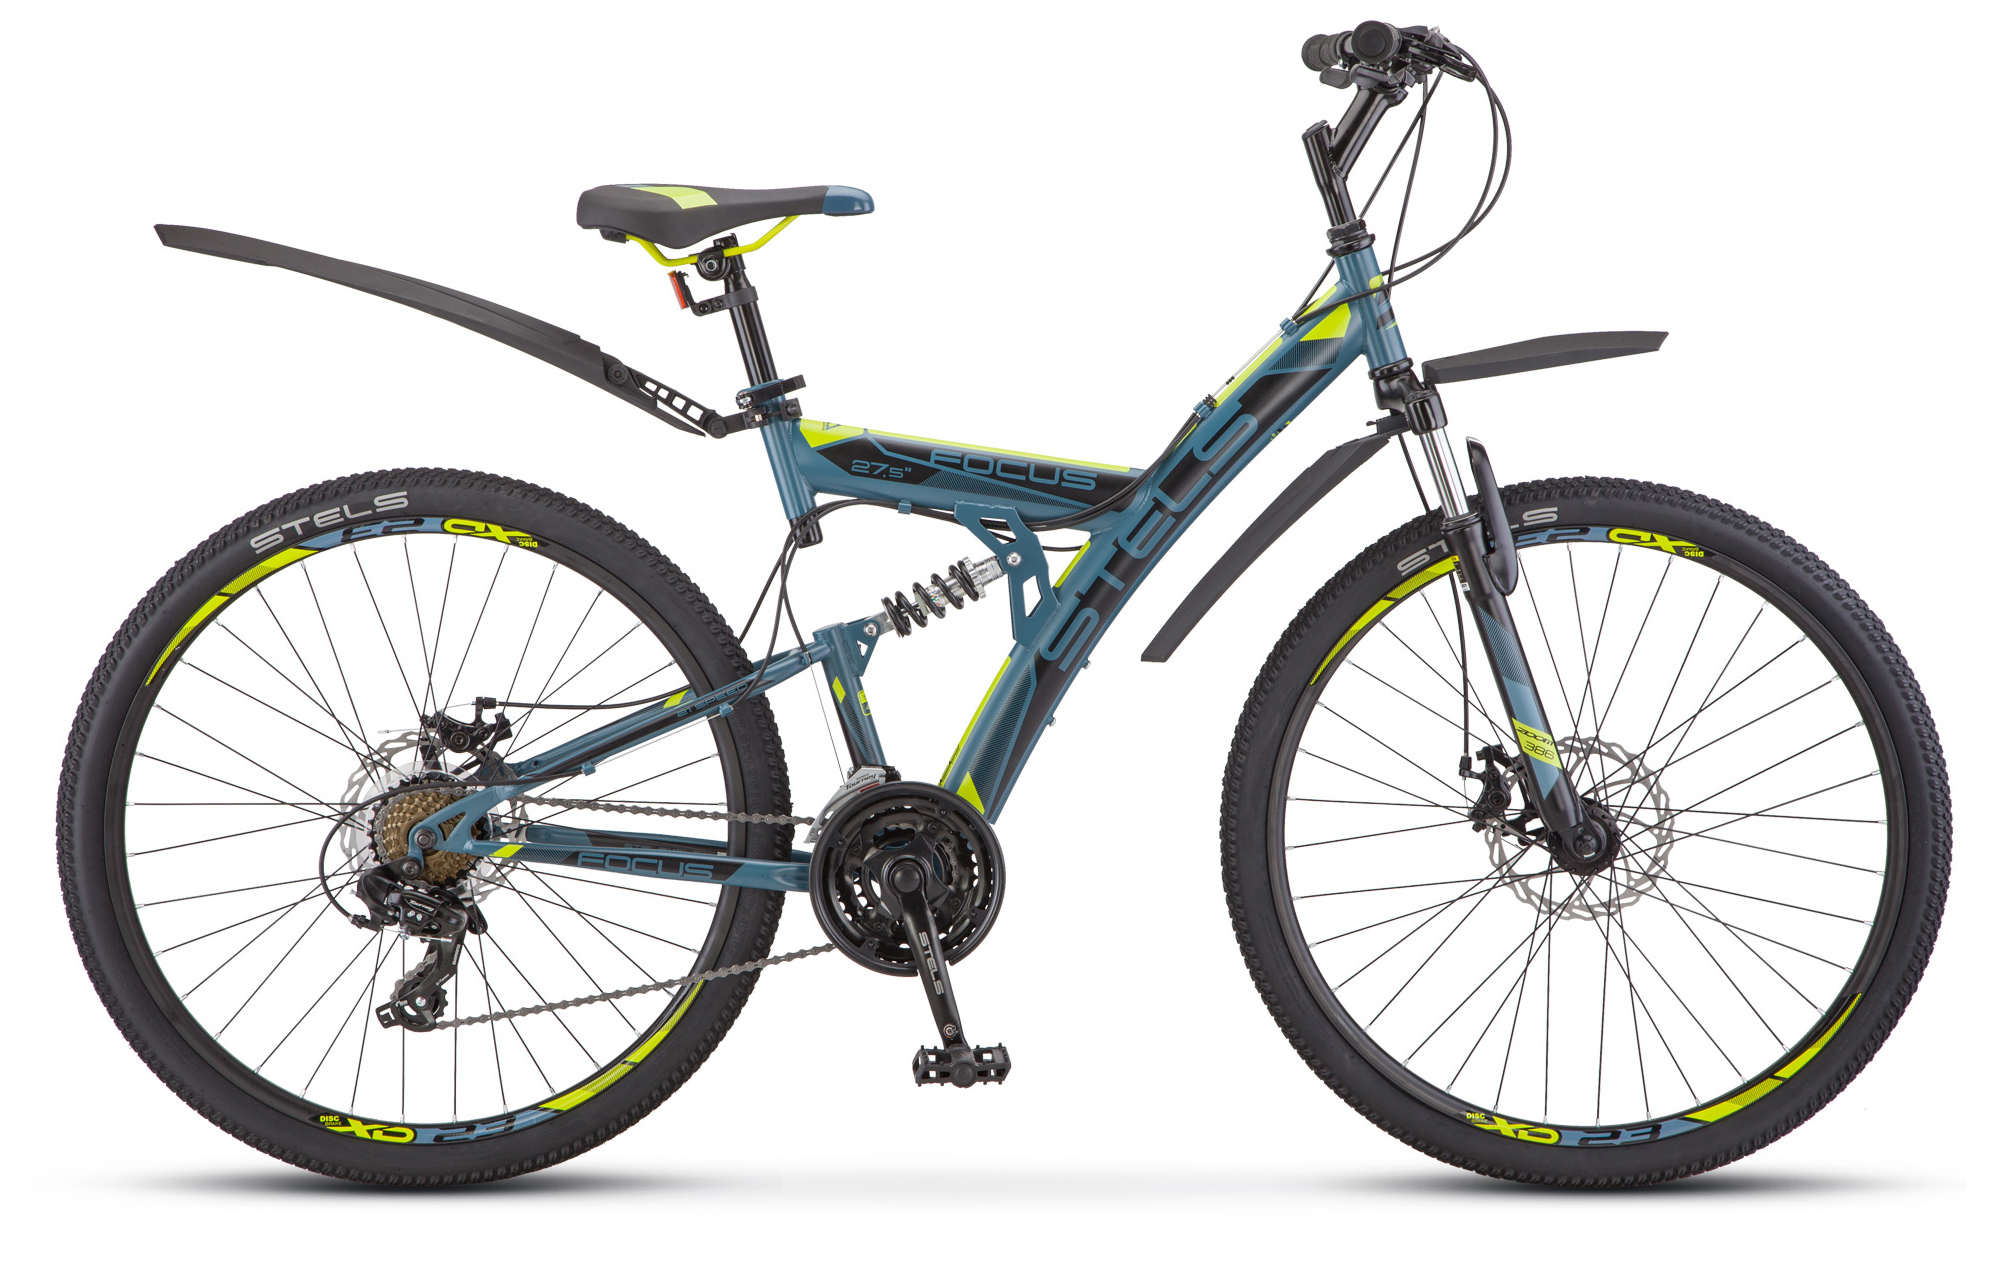  Отзывы о Двухподвесном велосипеде Stels Focus MD 27.5" 21-sp (V010) 2019